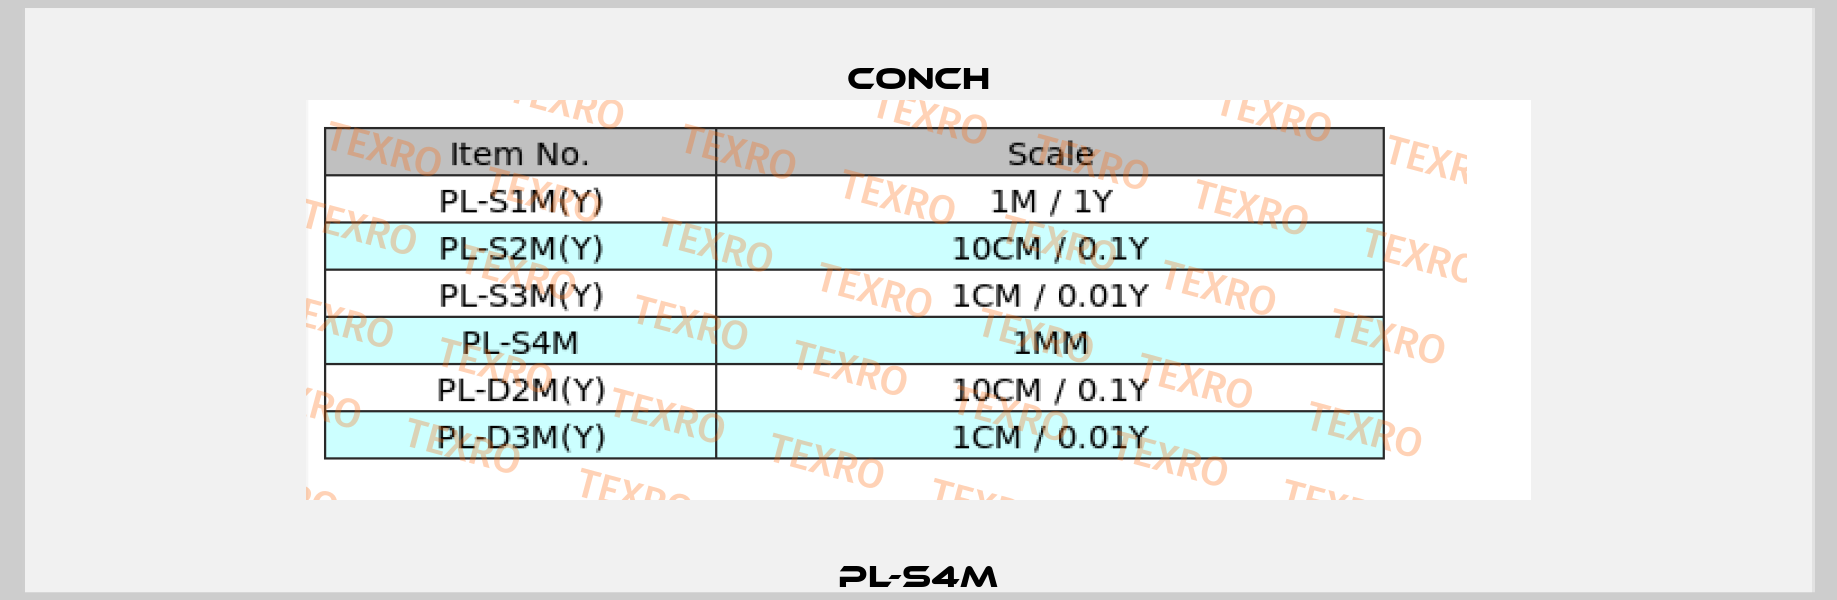 PL-S4M Conch